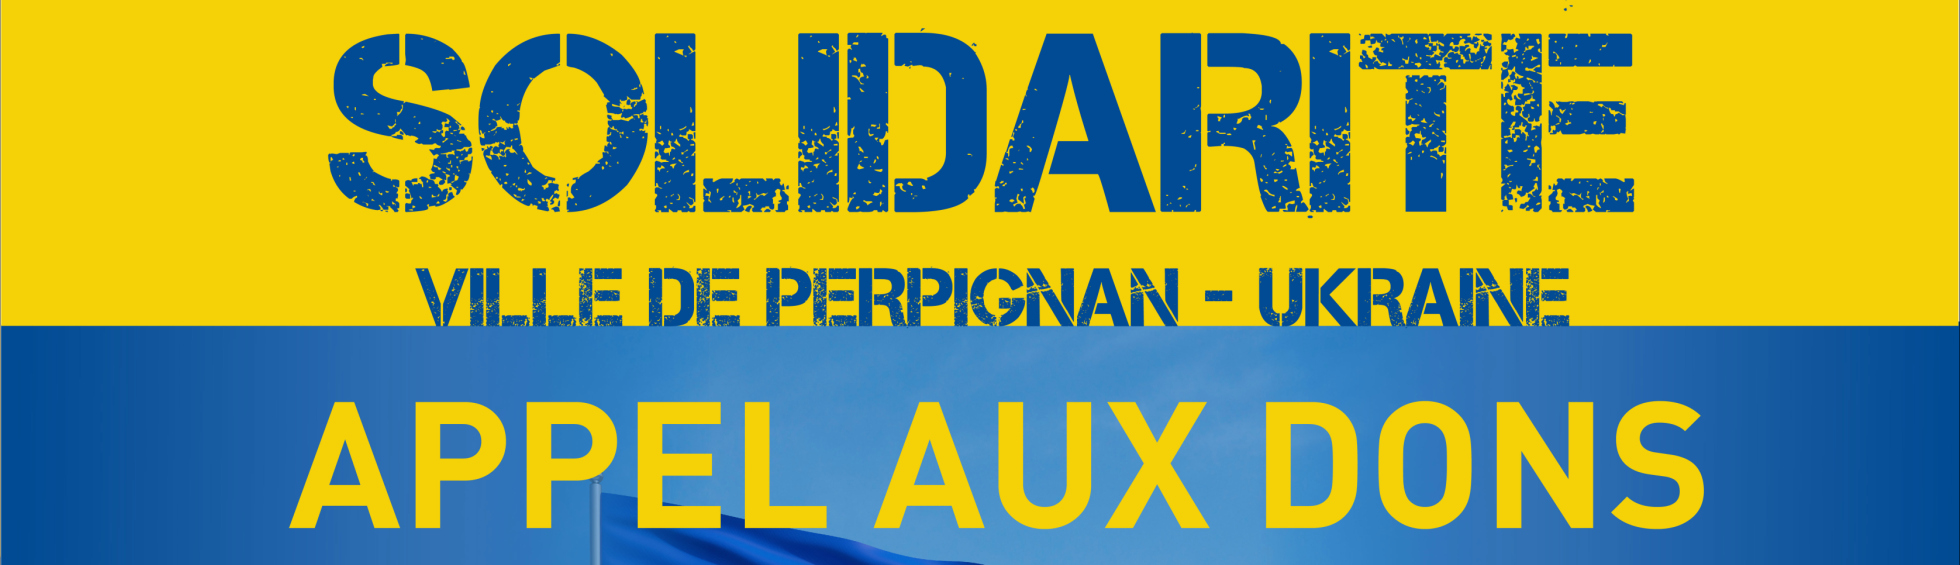 La Ville de Perpignan organise la solidarité avec le peuple ukrainien